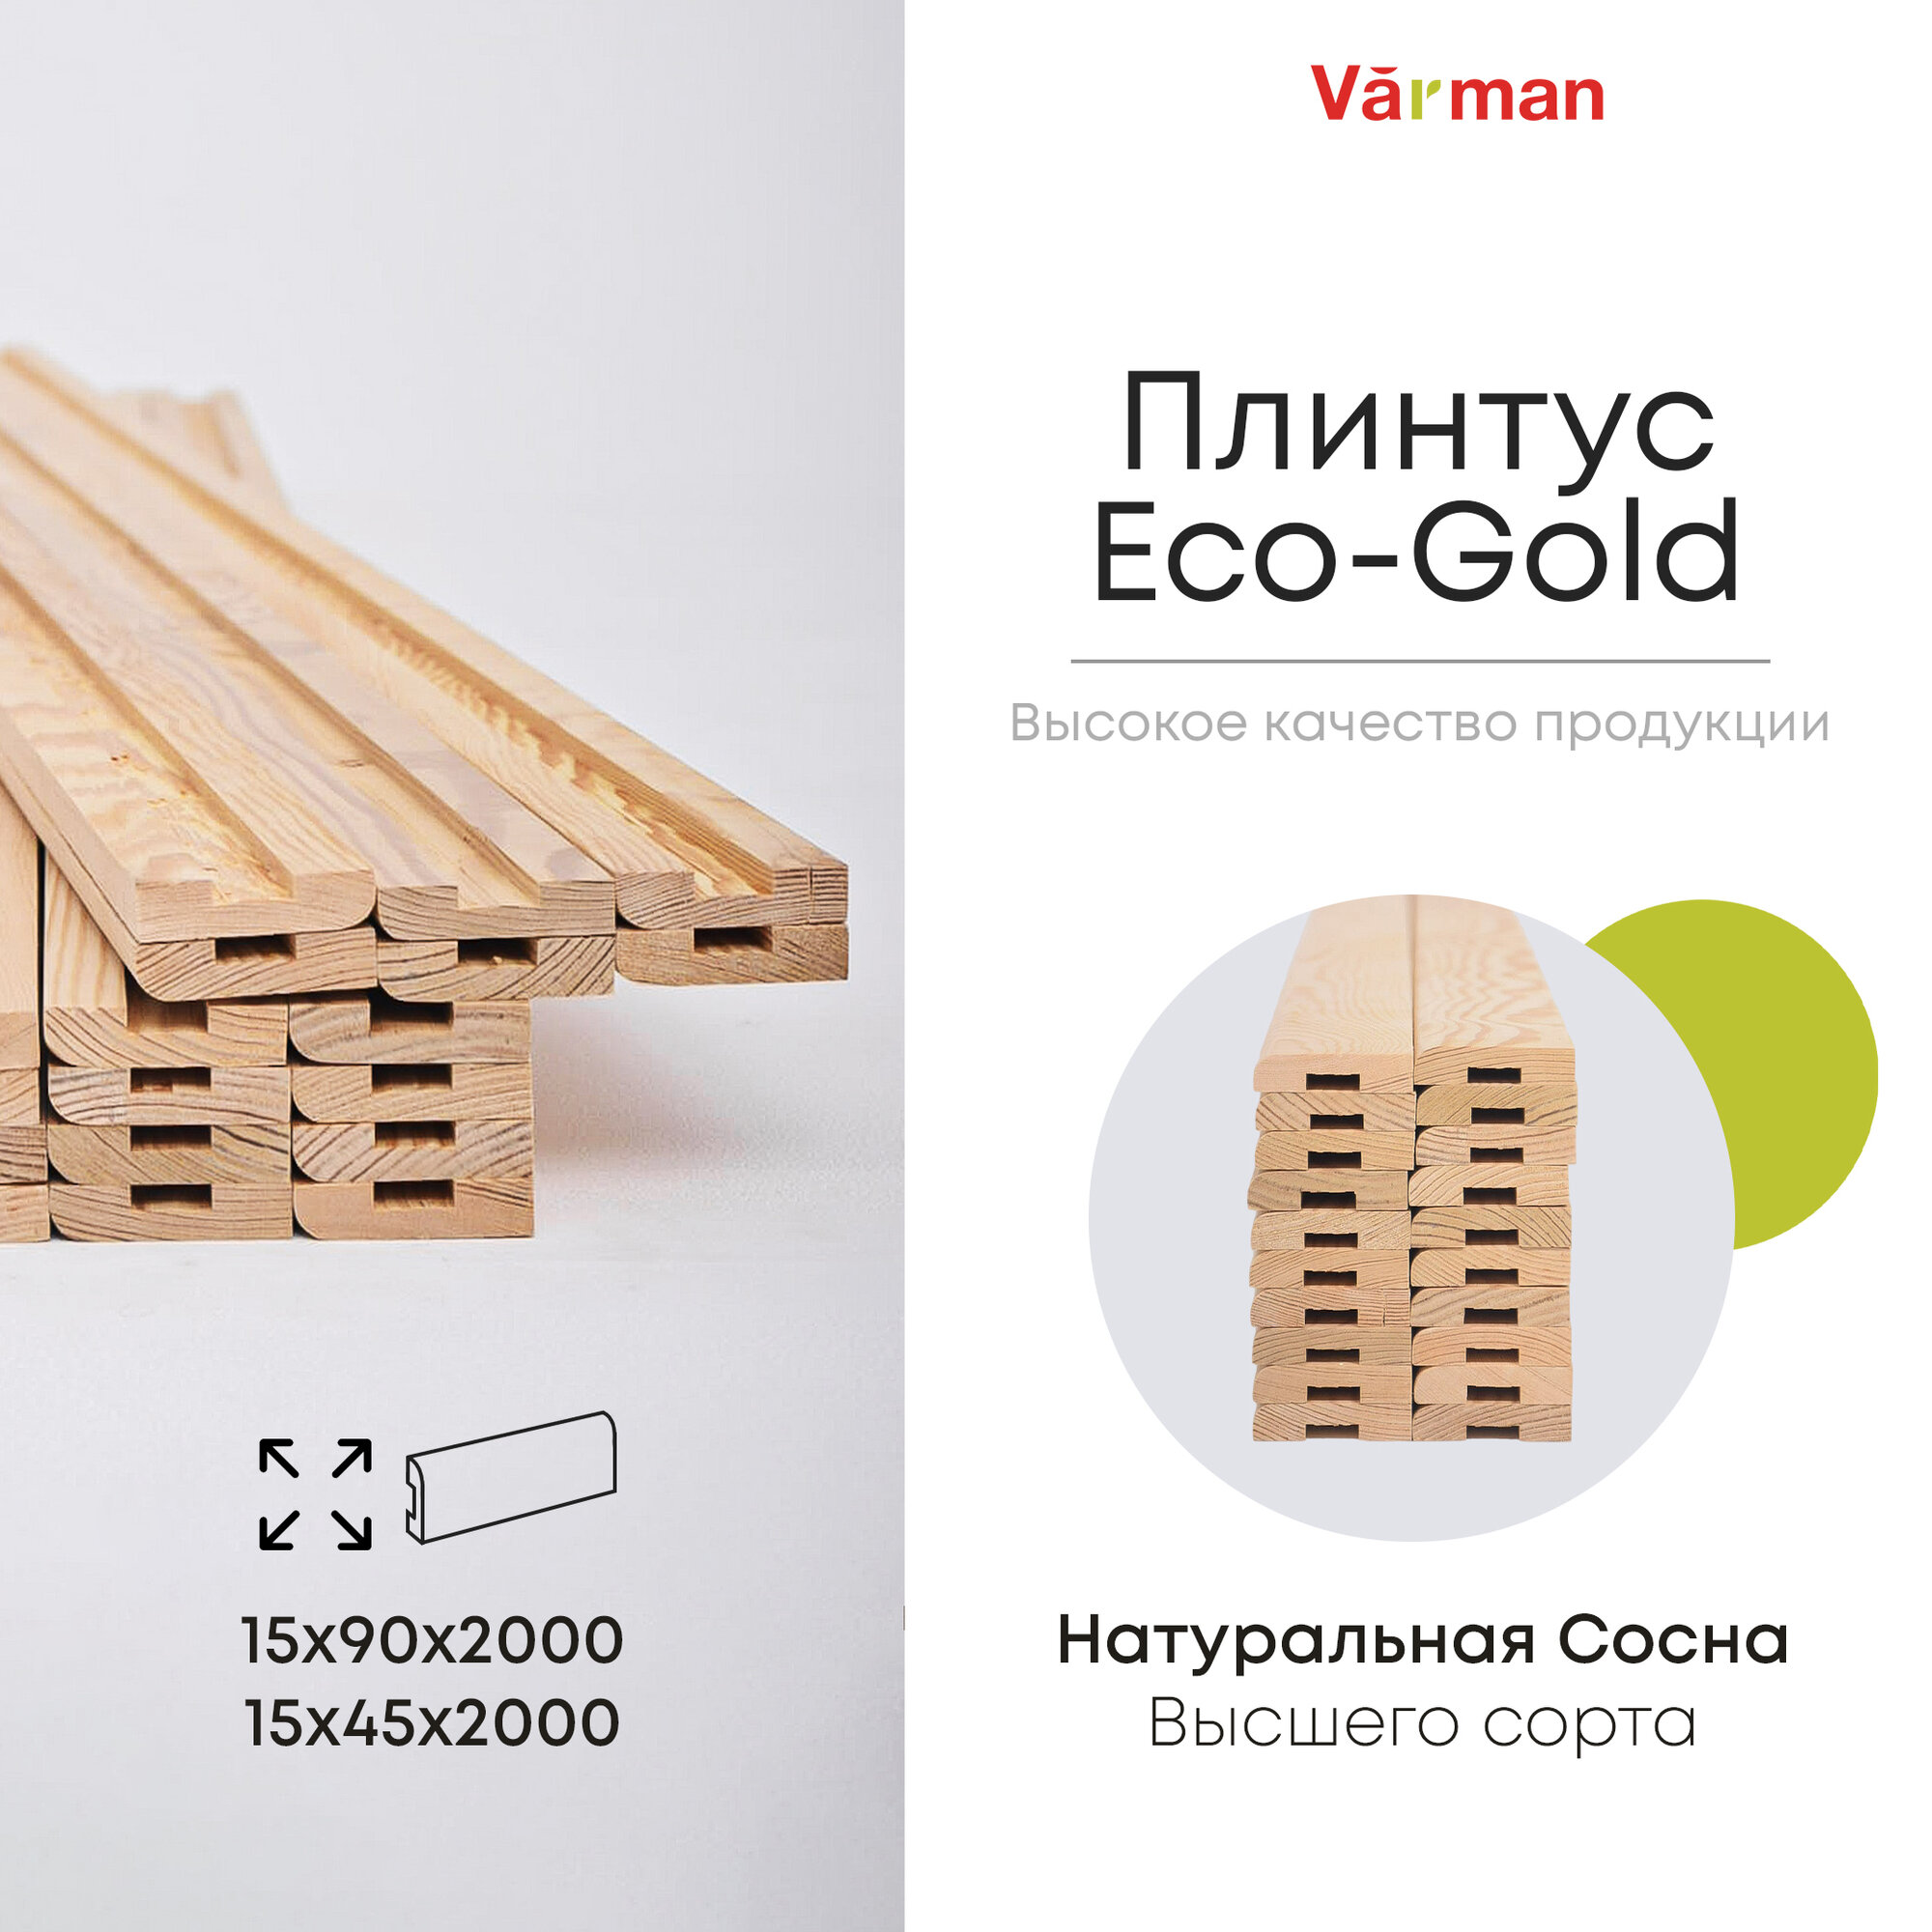 Плинтус Eco-Gold, сорт Высший, деревянный 15х90х2000 (1 шт), натуральный, Varman.pro